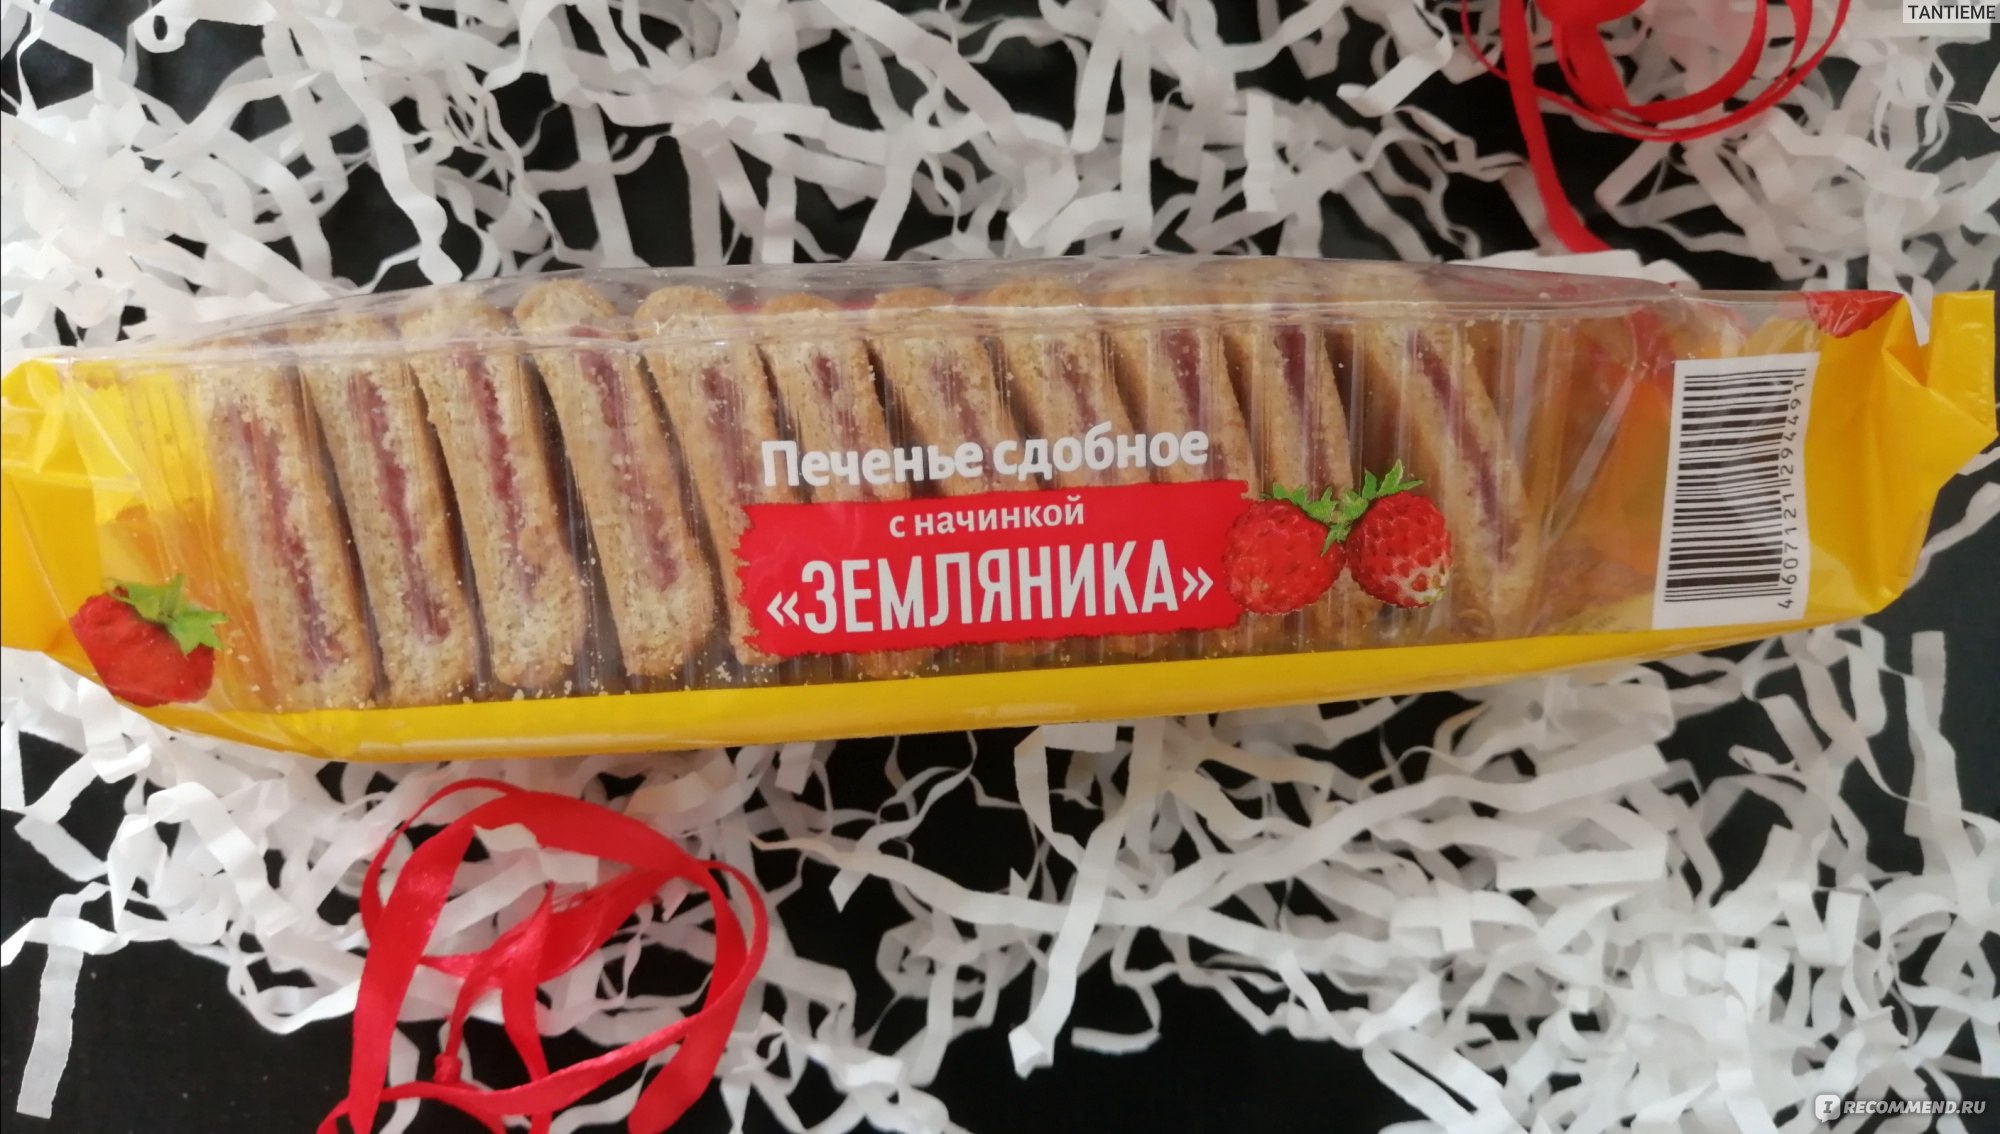 Печенье сдобное Хлебный Спас мягкое с начинкой "Земляника" фото